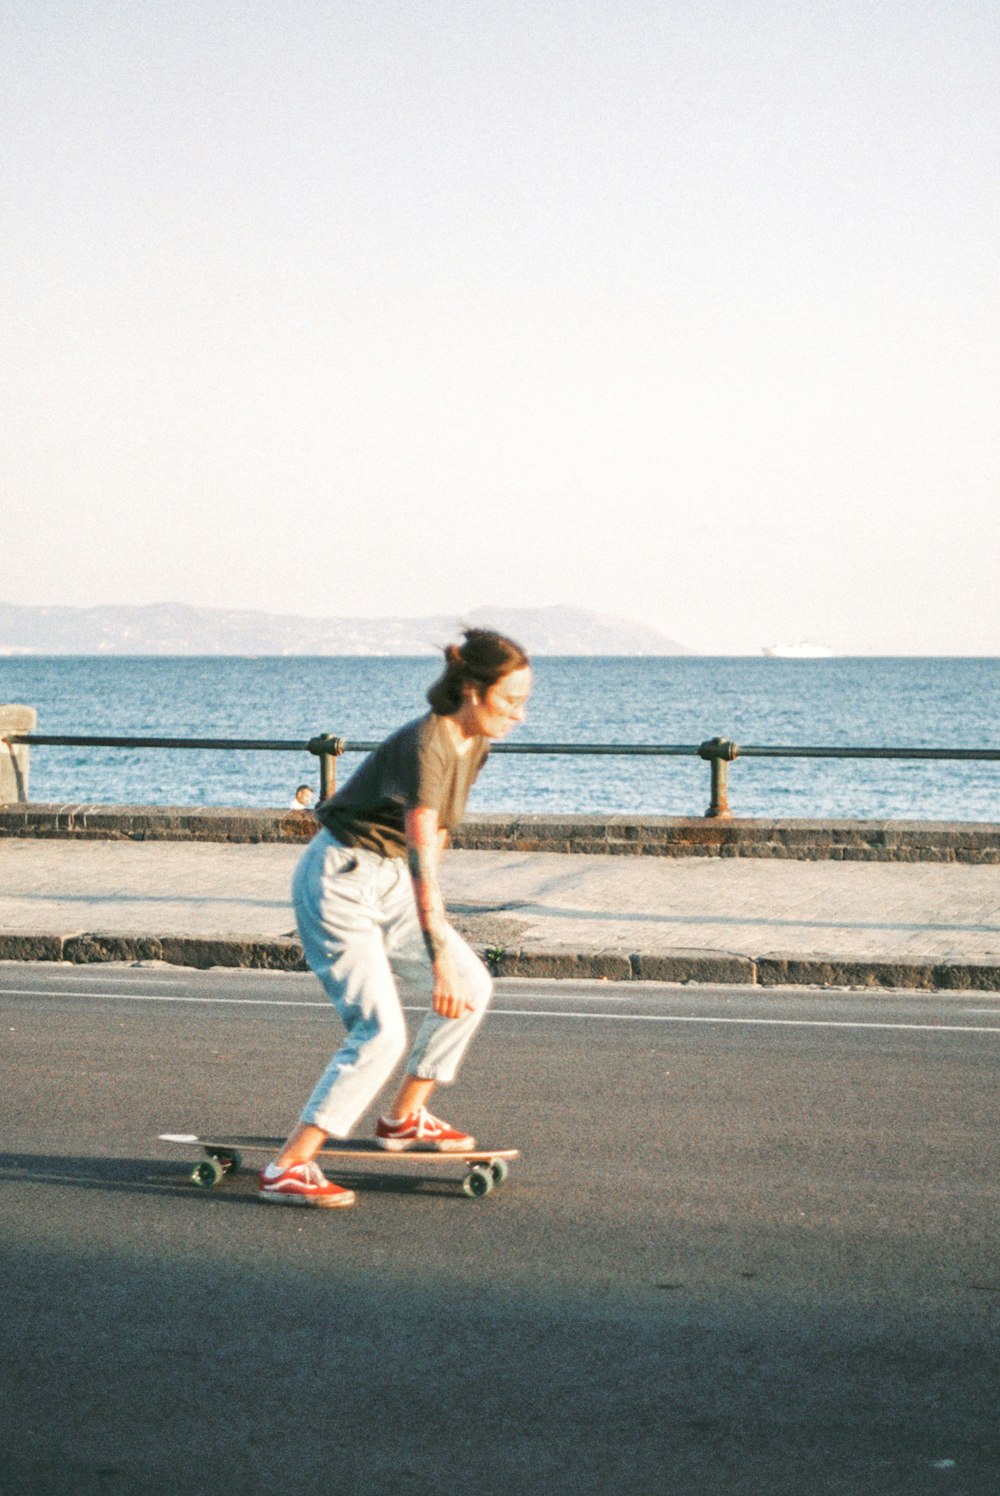 바다 옆 거리에서 스케이트보드를 타는 여자